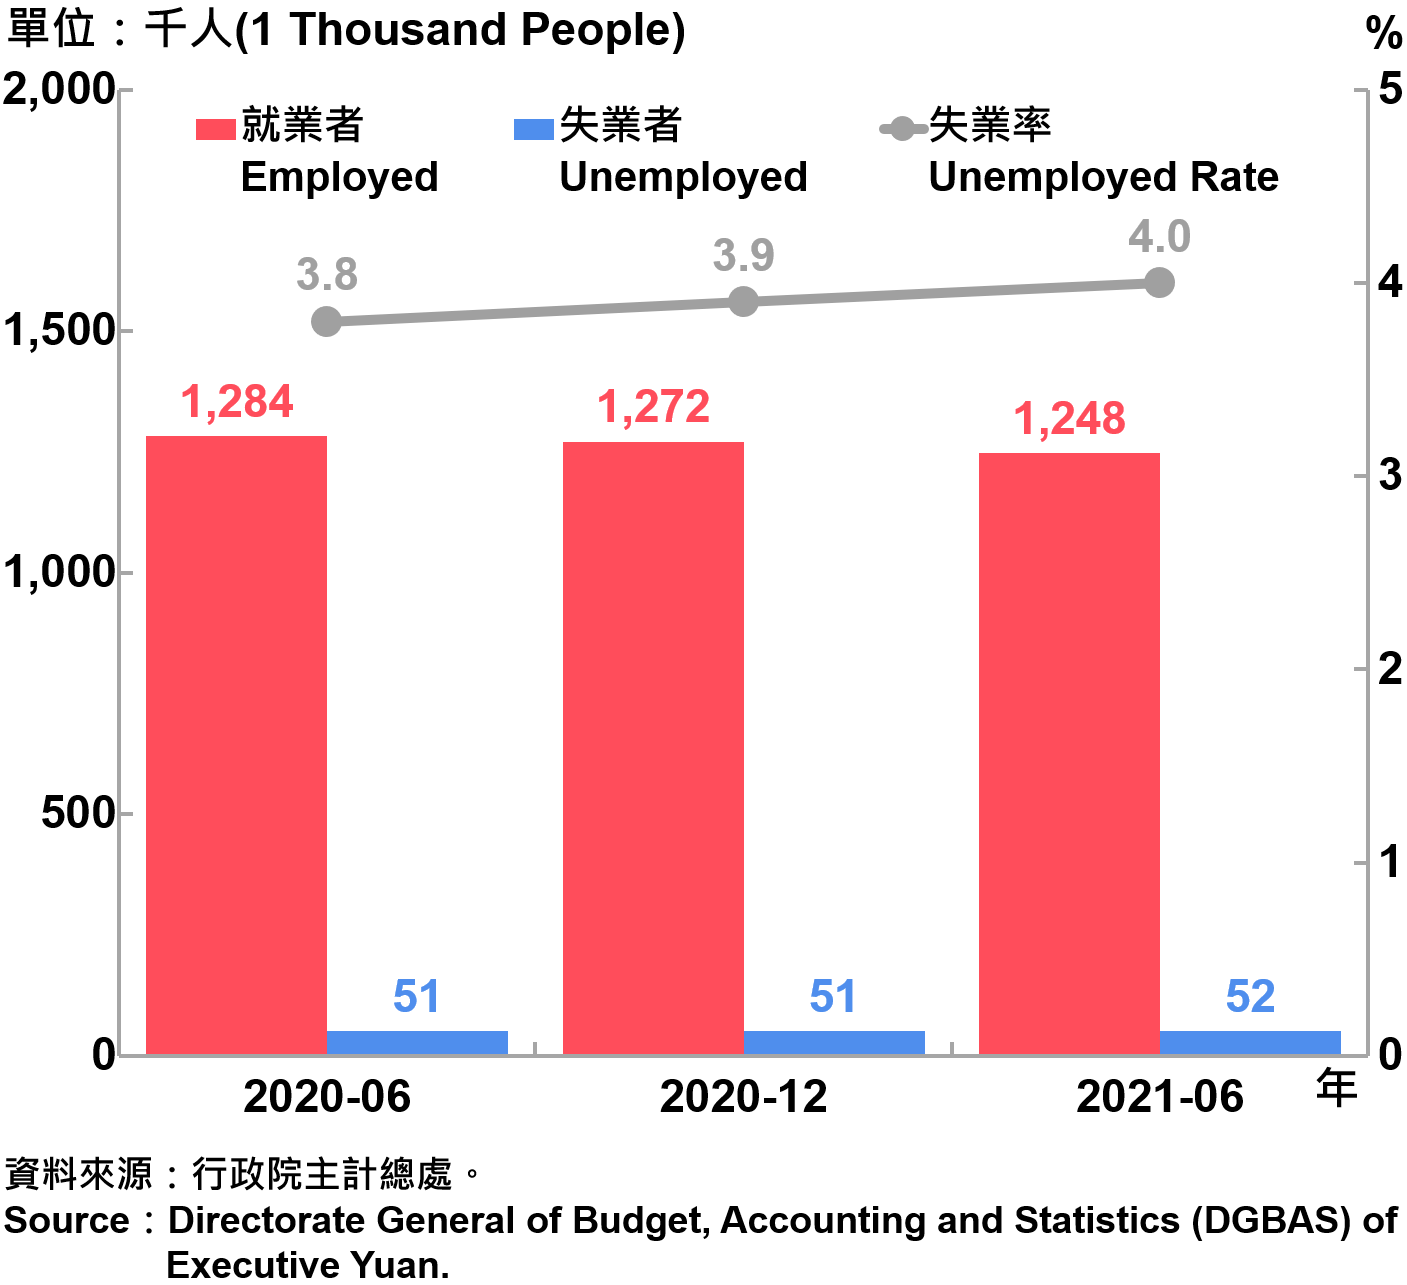 臺北市勞動力人數統計—2021Q2 Labor Force Statistics in Taipei City—2021Q2